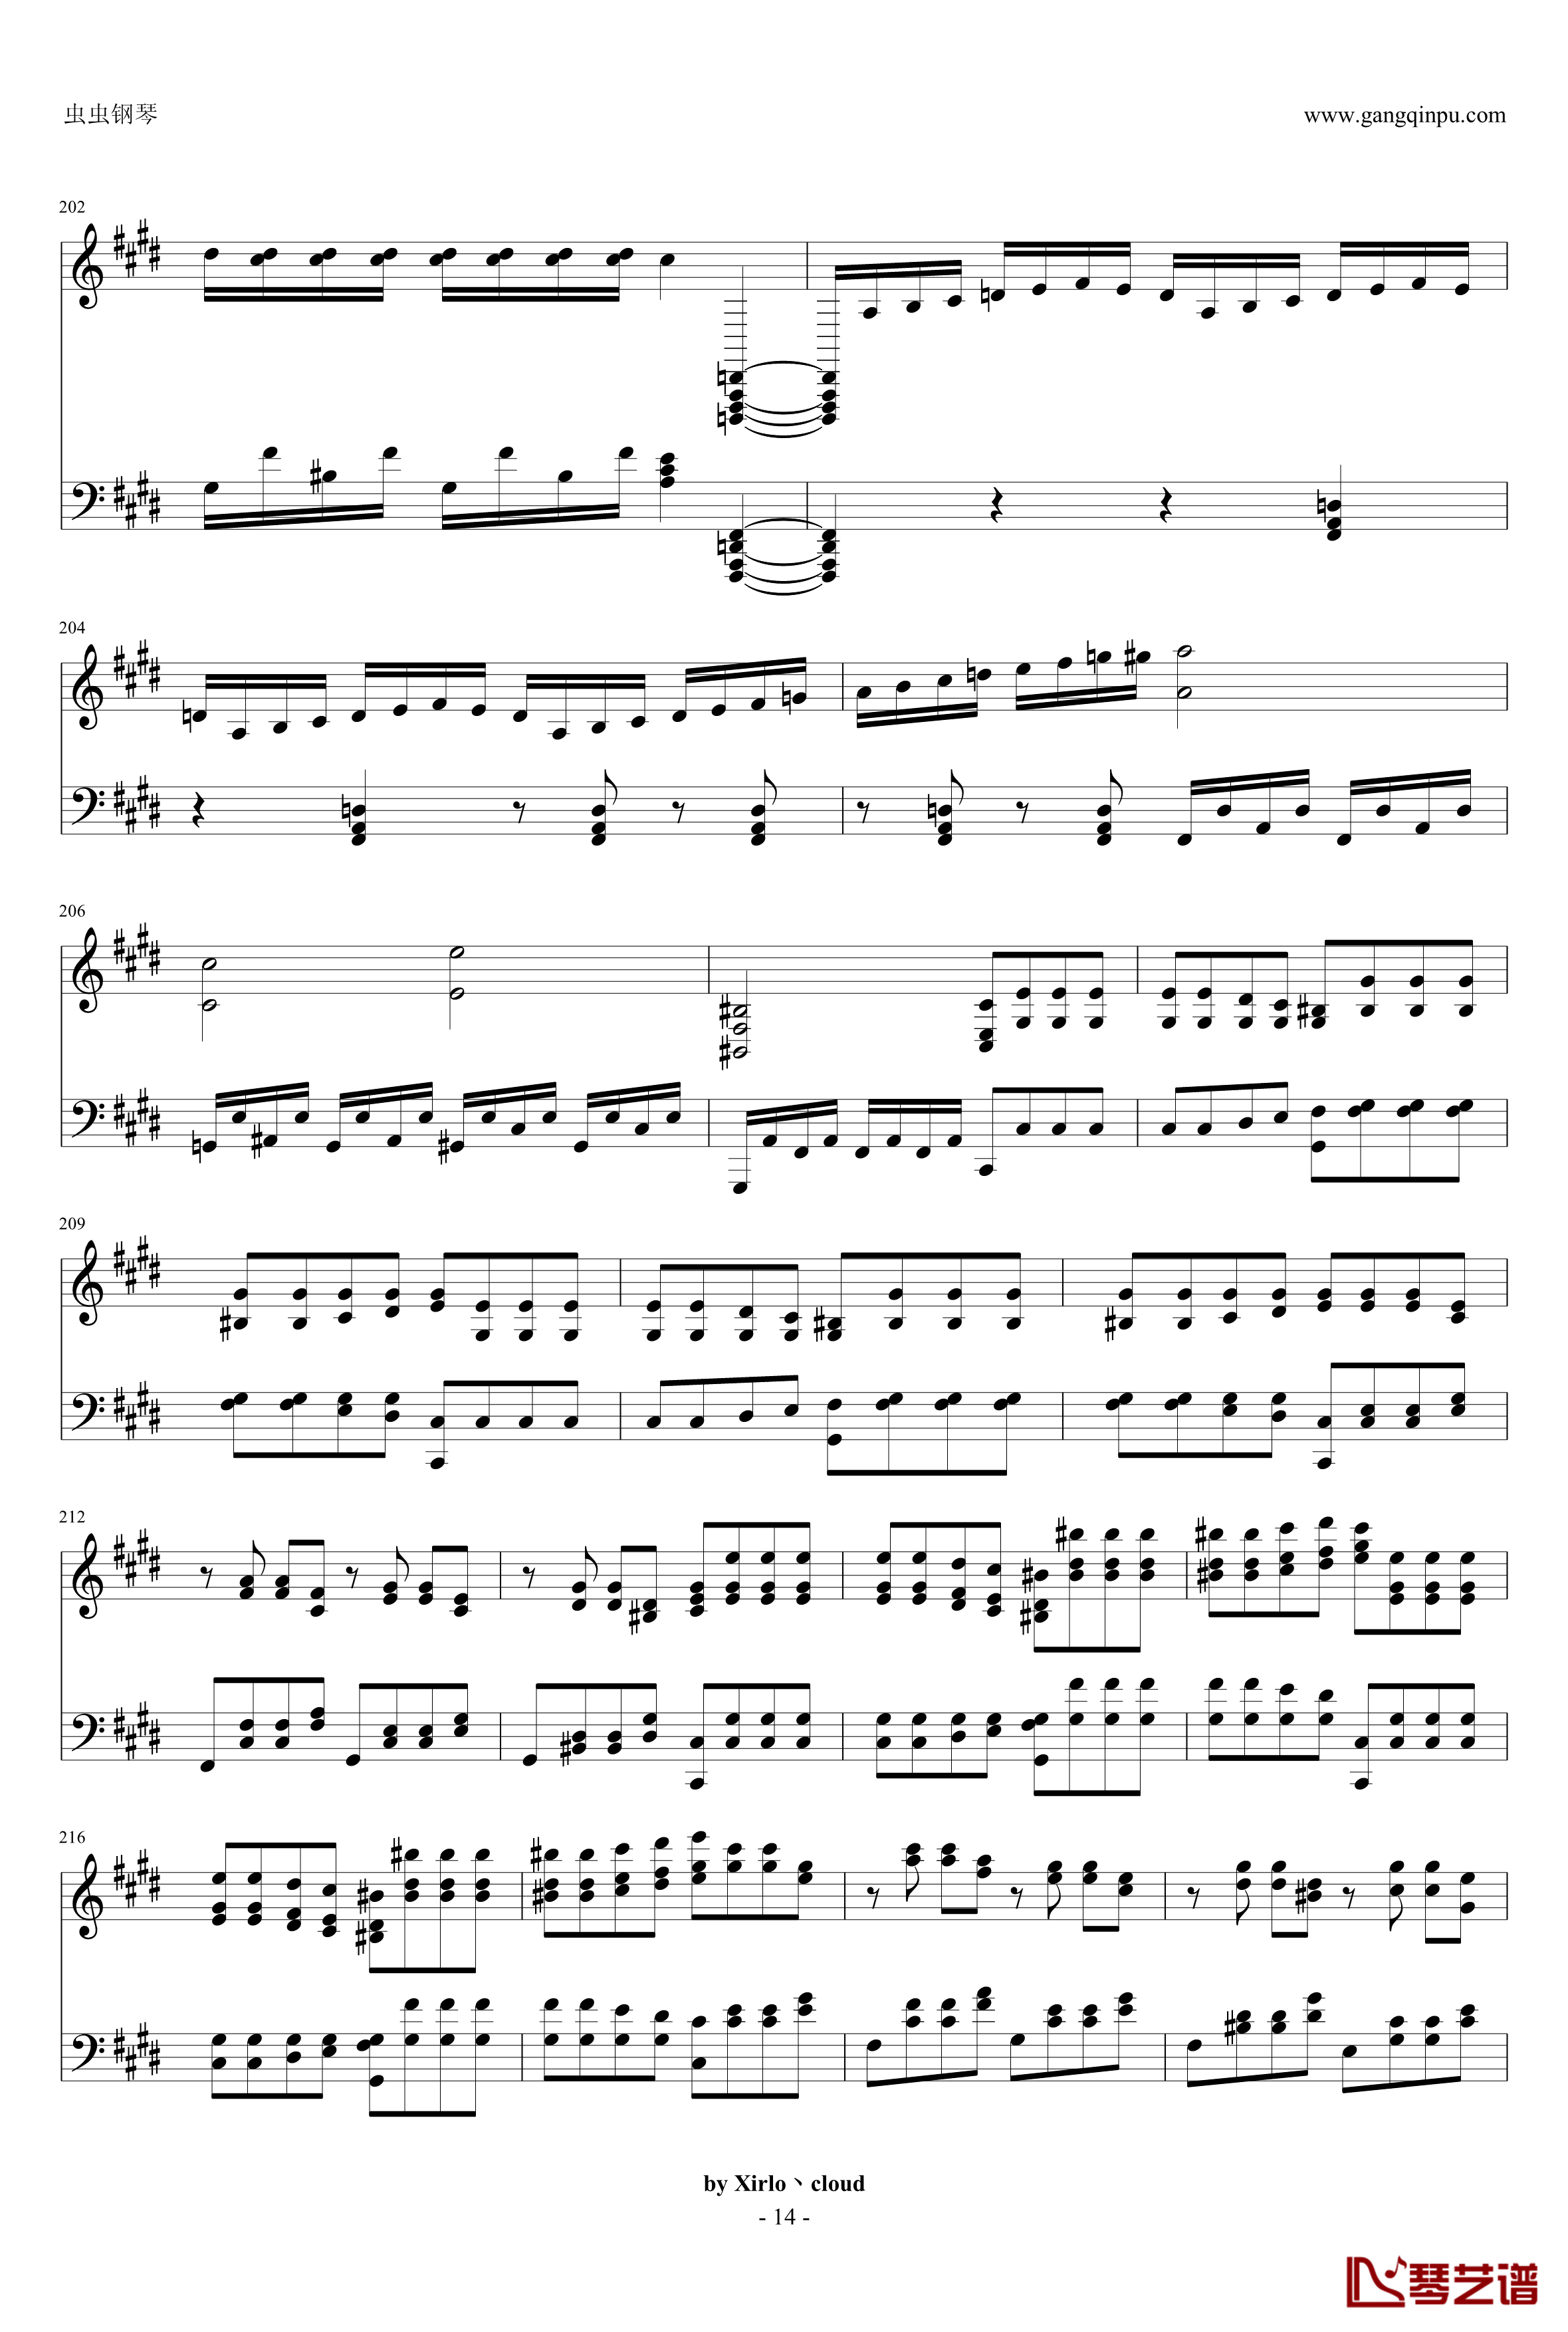 月光奏鸣曲钢琴谱-改编版-贝多芬-beethoven14